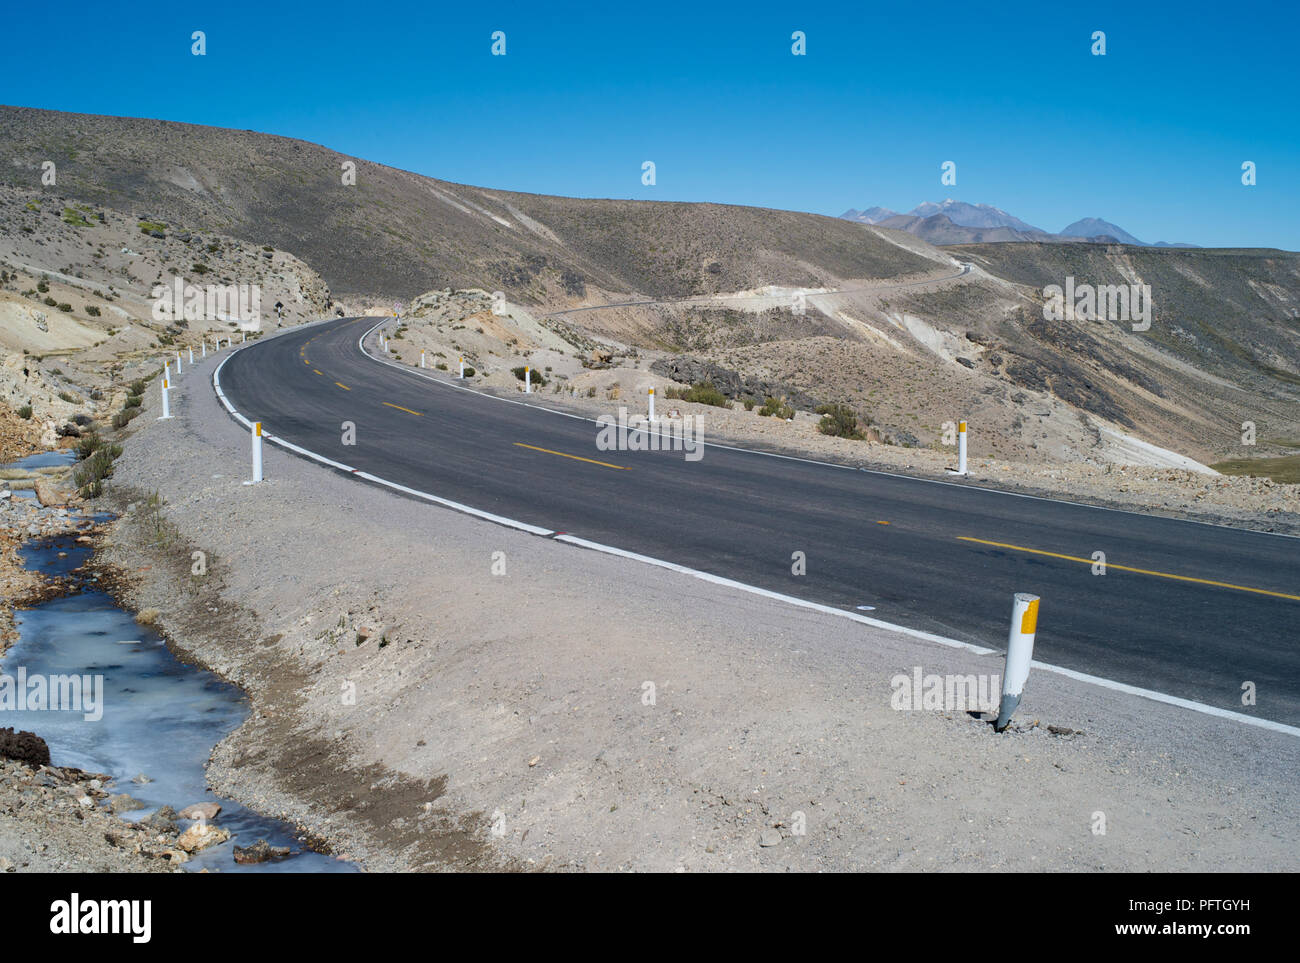 Lonely Road on the Abra Patapampa Pass, Peru Stock Photo